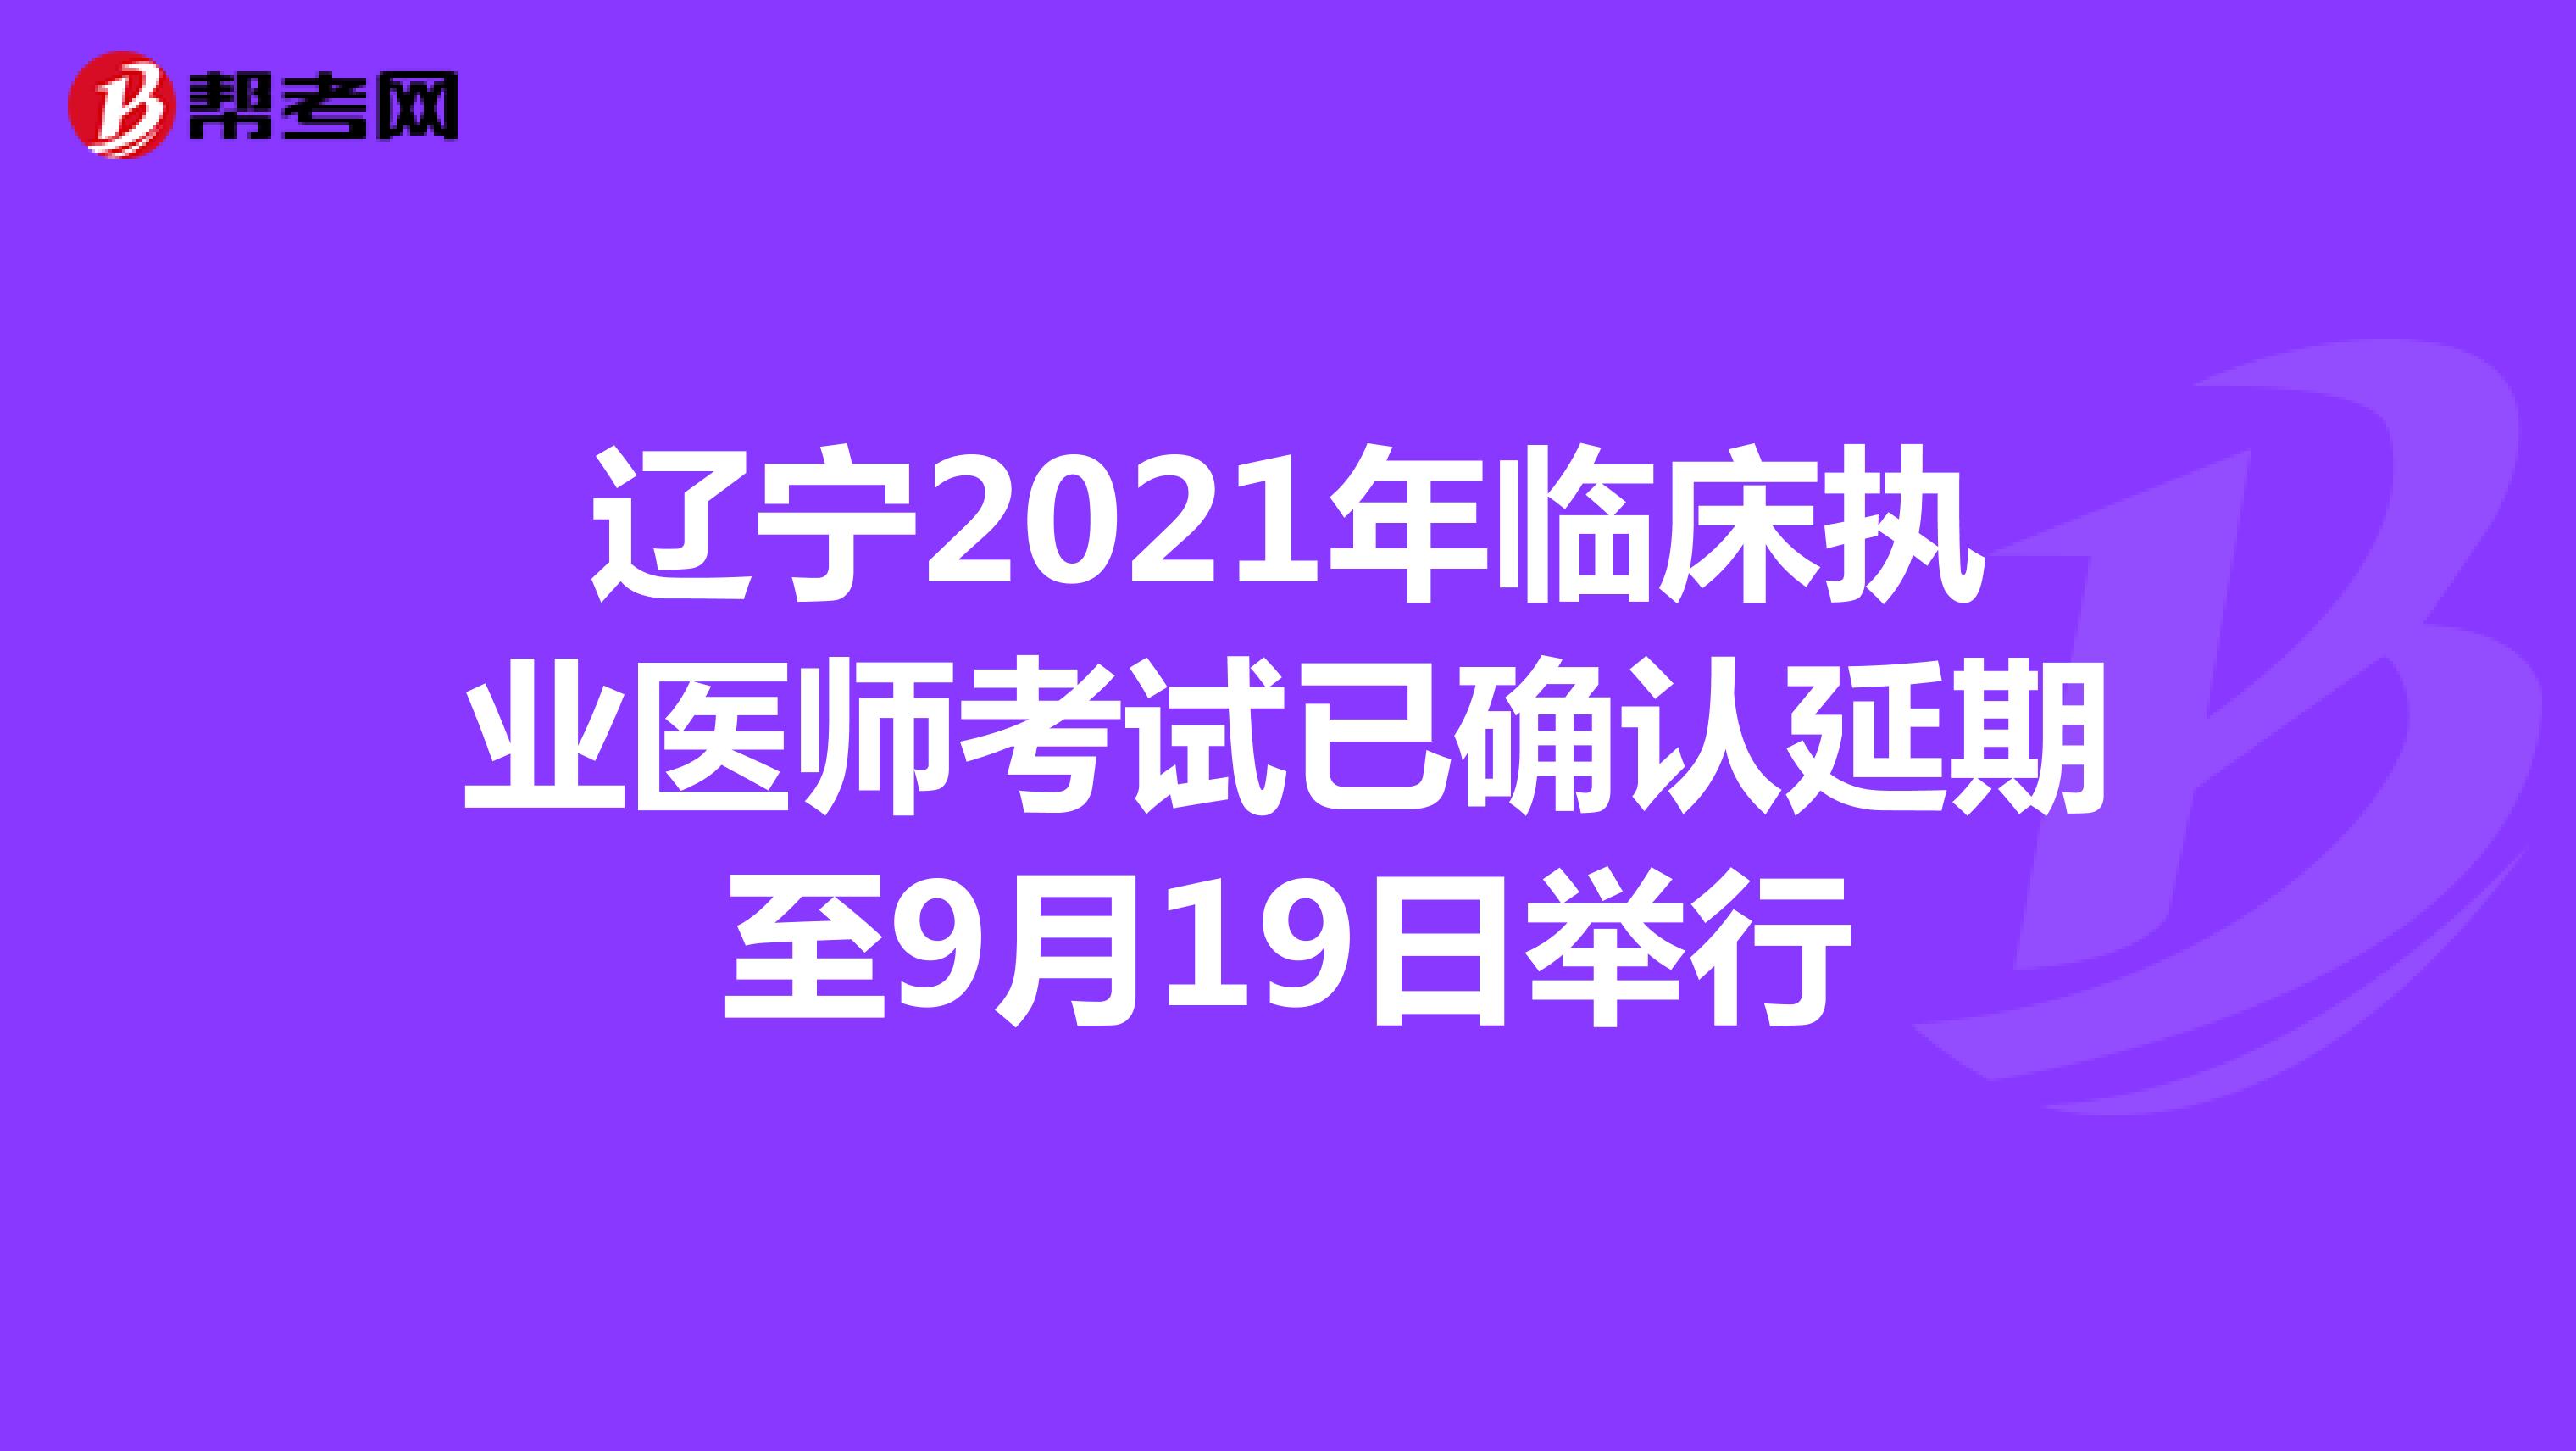 辽宁2021年临床执业医师考试已确认延期至9月19日举行